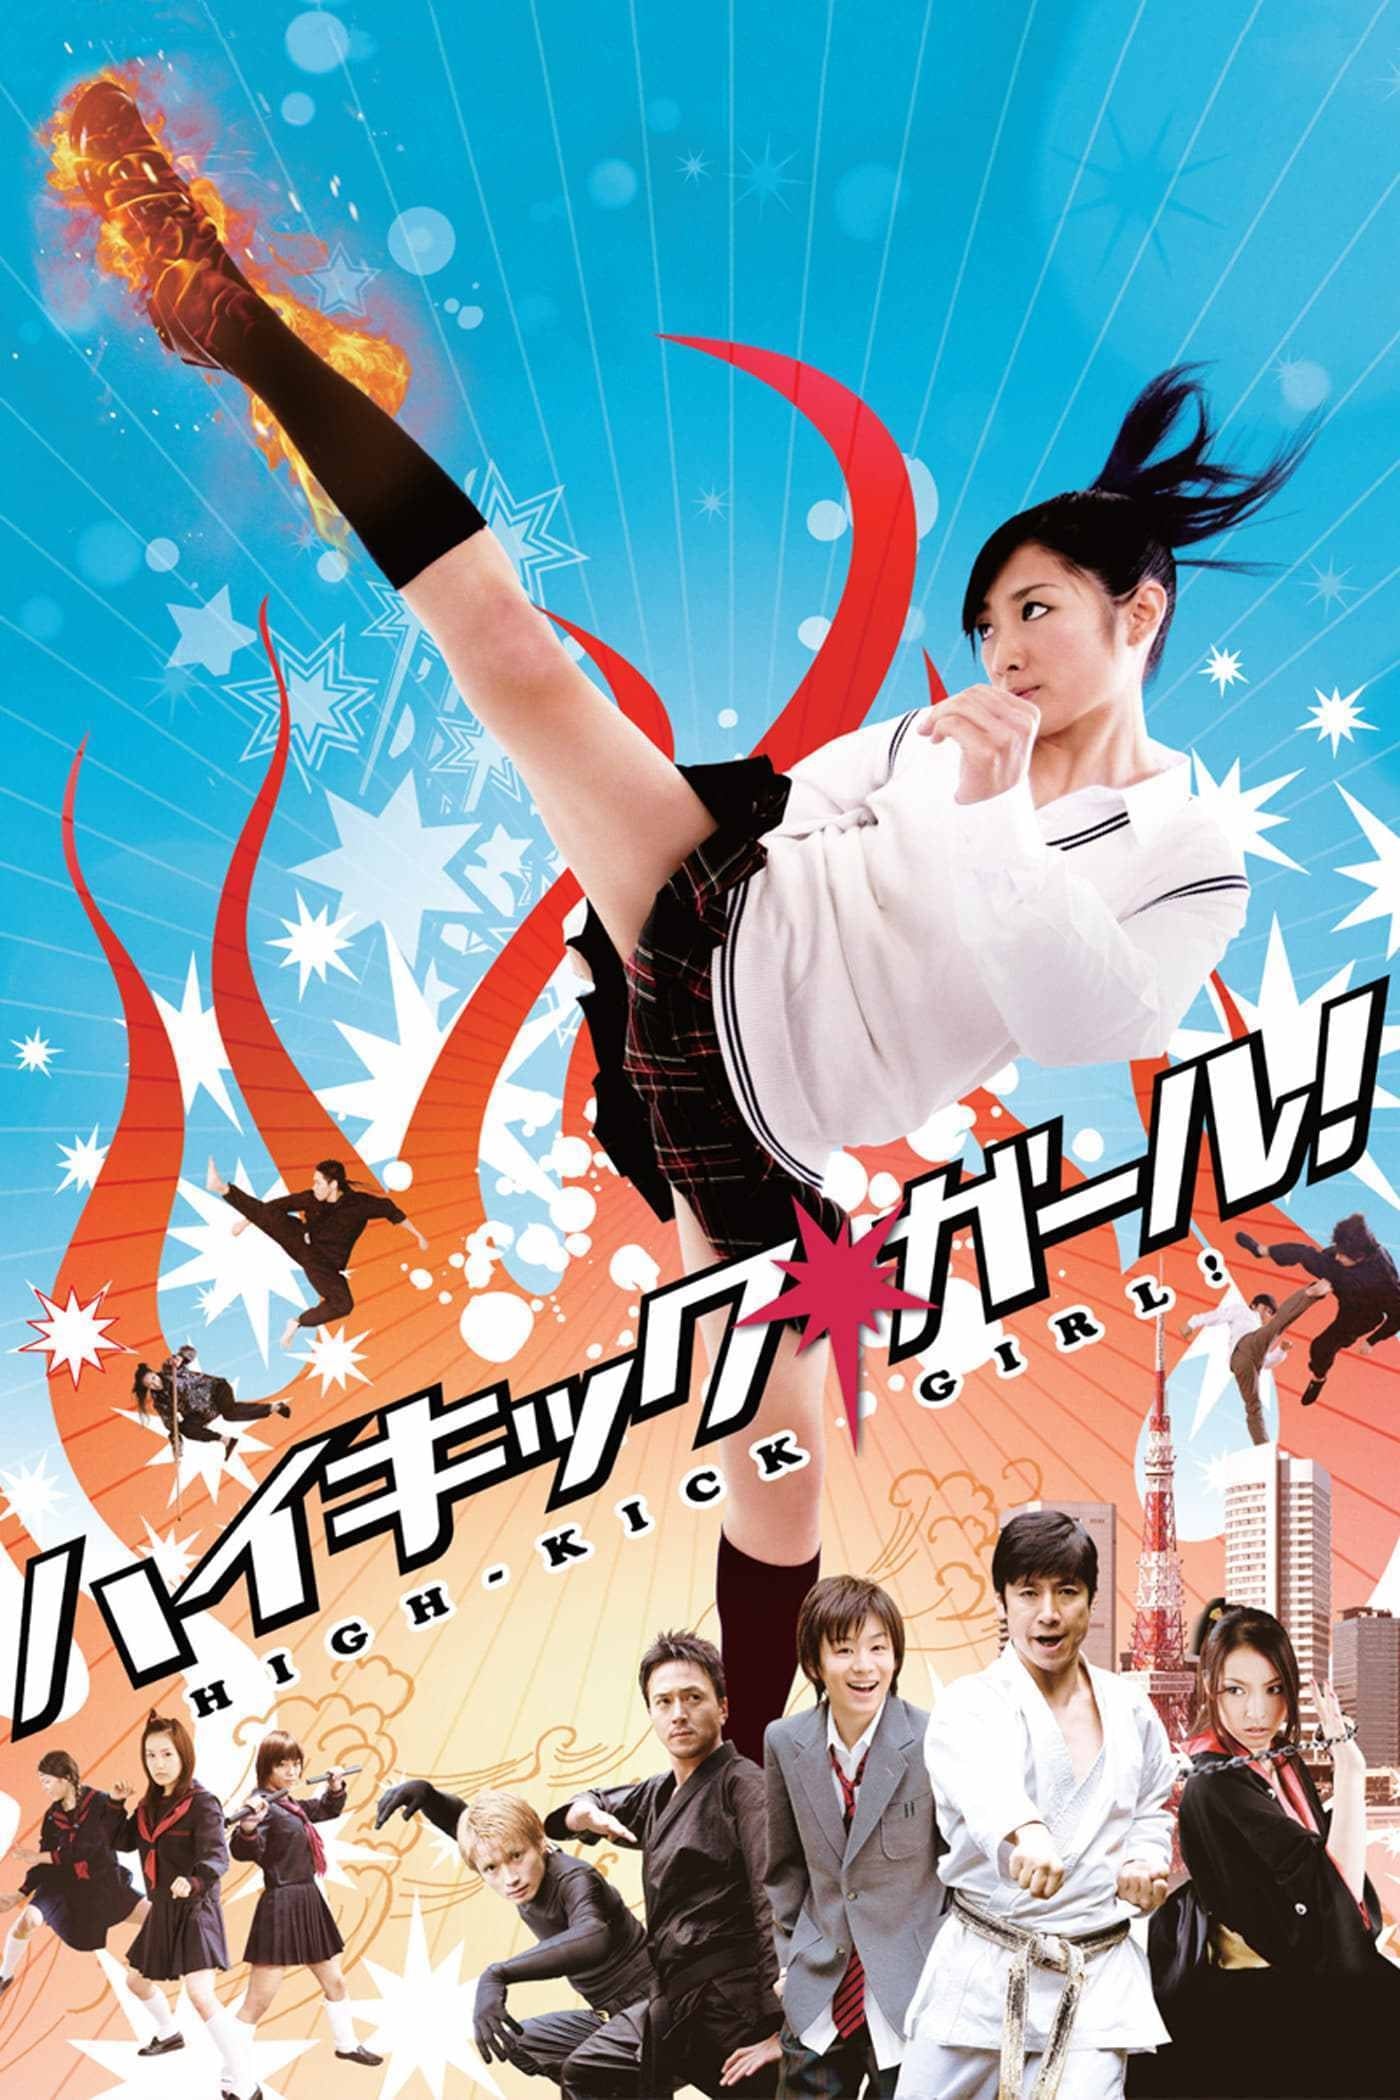 Buchikome high kick. High Kick. High Kick игра. High Kick дорама. Удар ангела (Япония-2014).